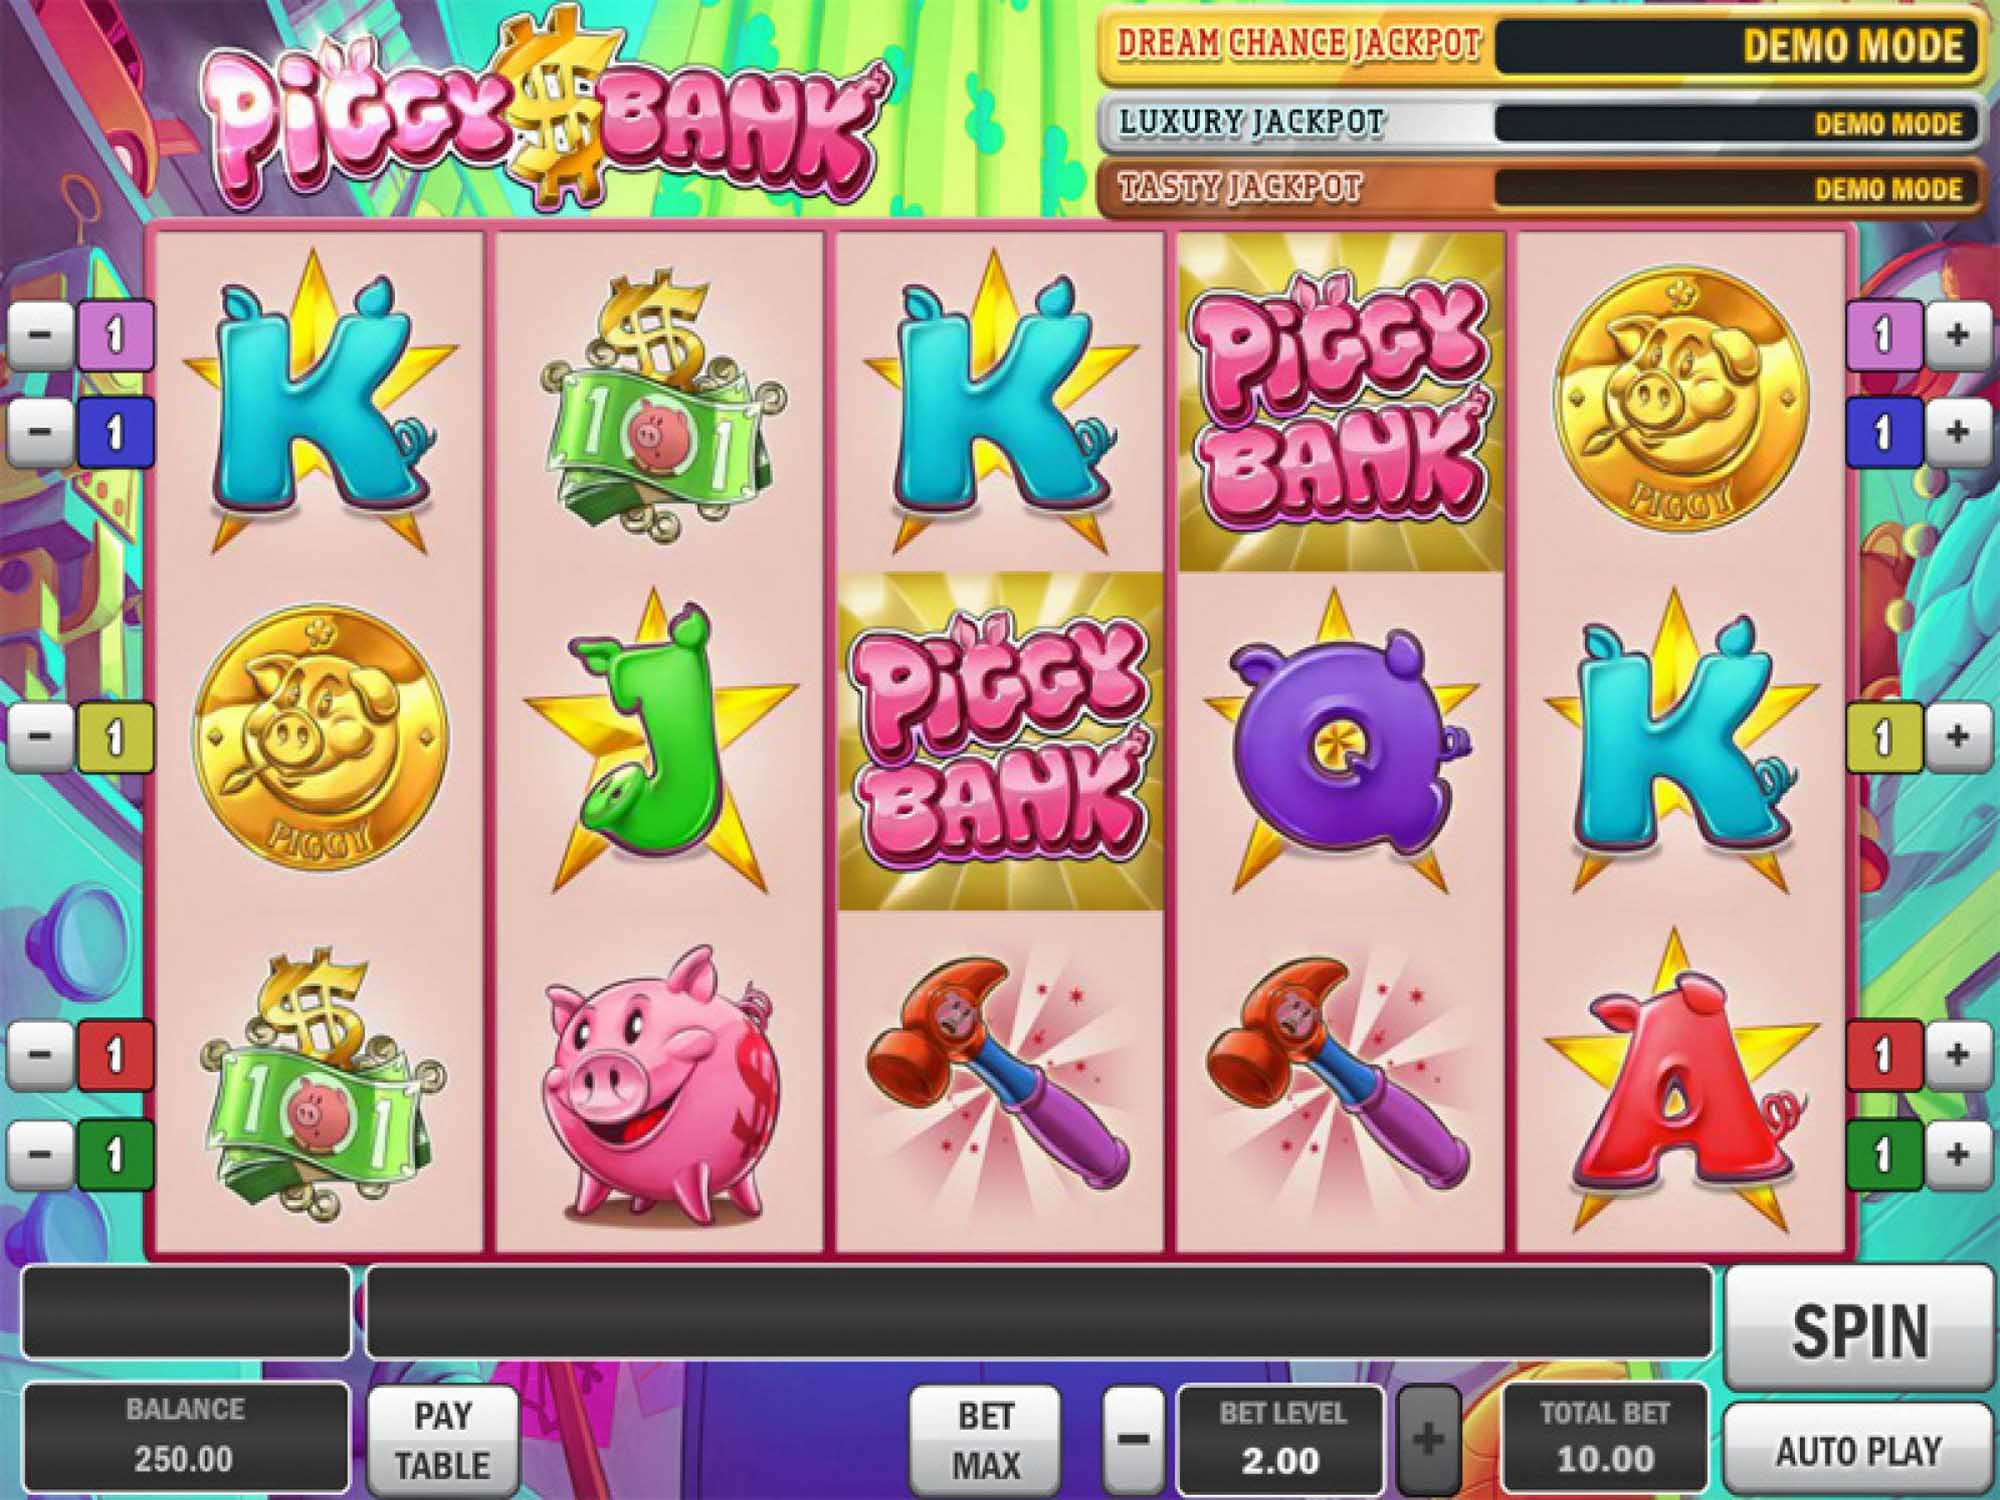 Официальный сайт Jet Casino и слоты «Piggy Bank»